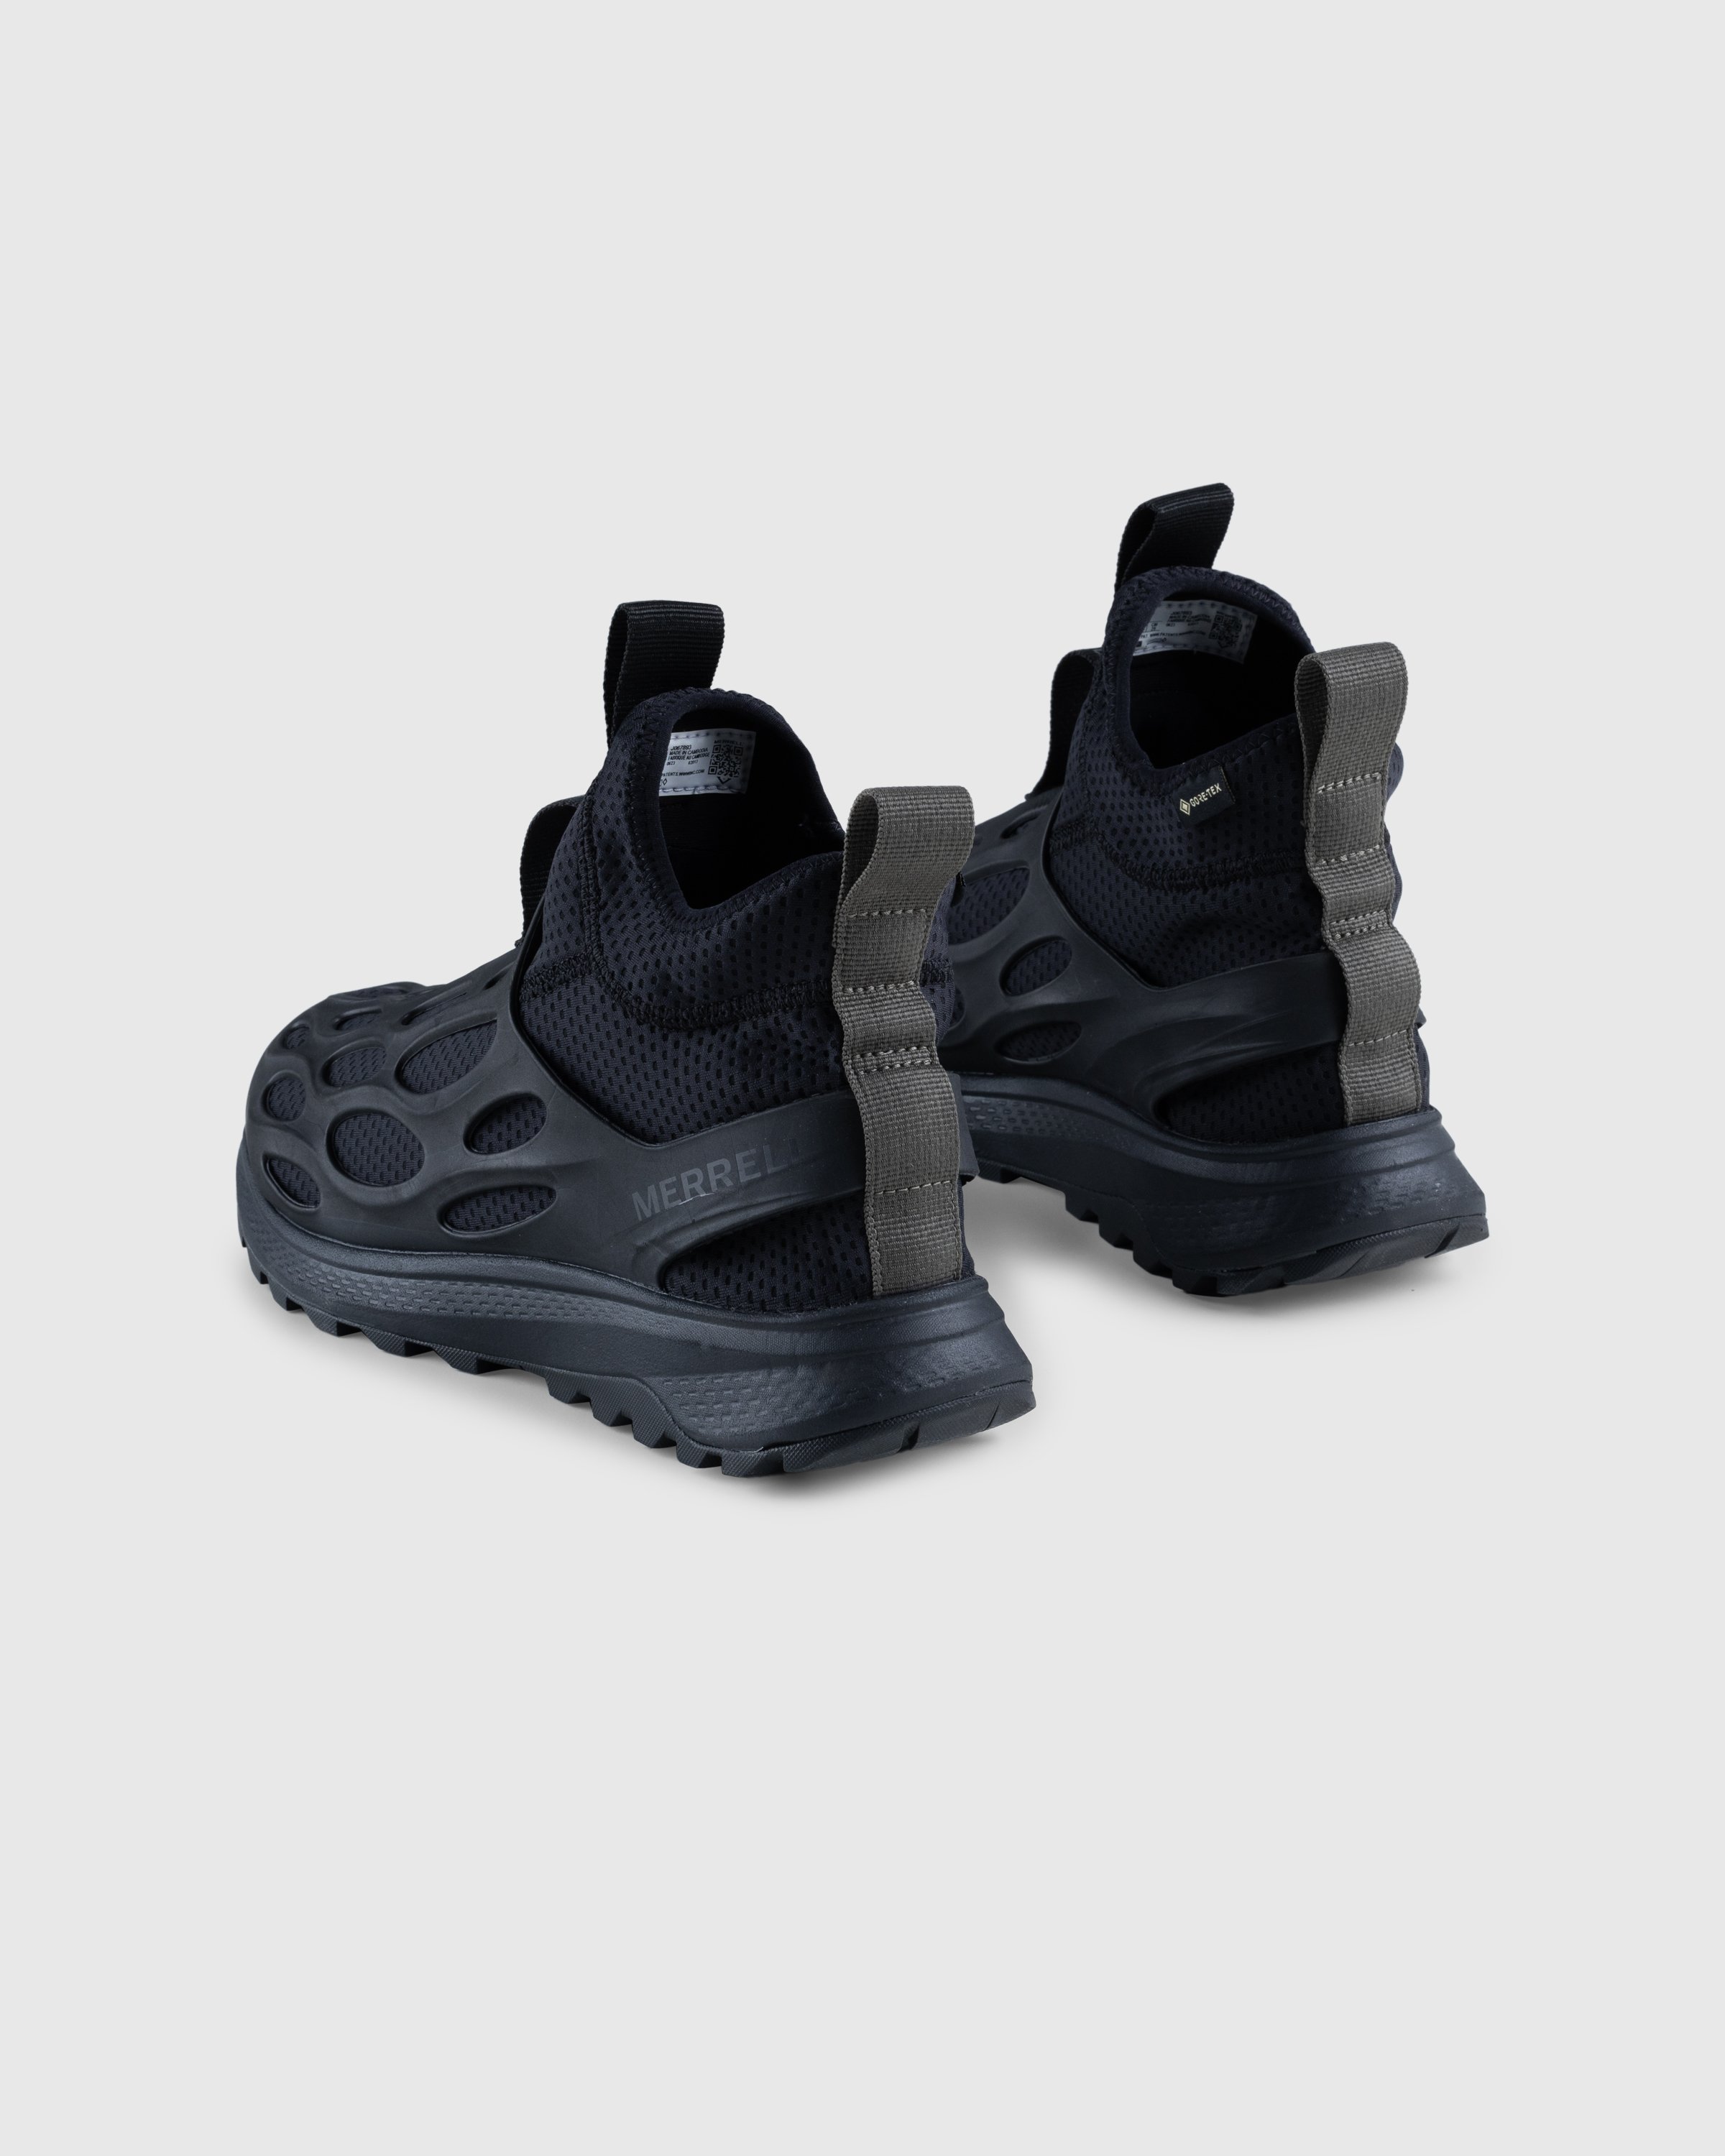 Merrell - HYDRO RUNNER MID GTX SE - Footwear - Black - Image 4